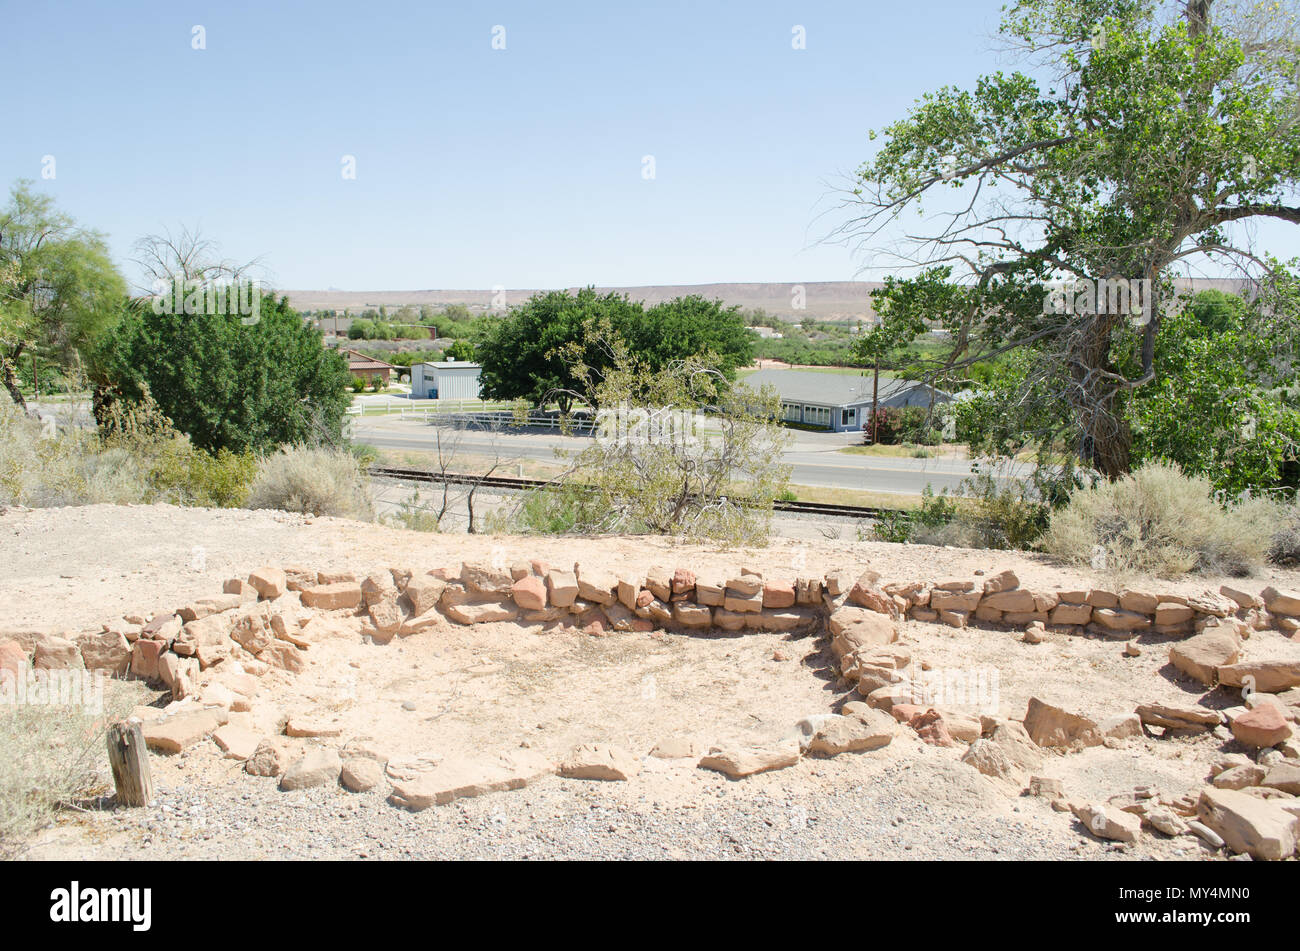 Musée de la ville perdue en vedette d'une fouille archéologique et de restauration d'une communauté indienne Anasazi Pueblo ou d'environ 1 000 ans. Banque D'Images